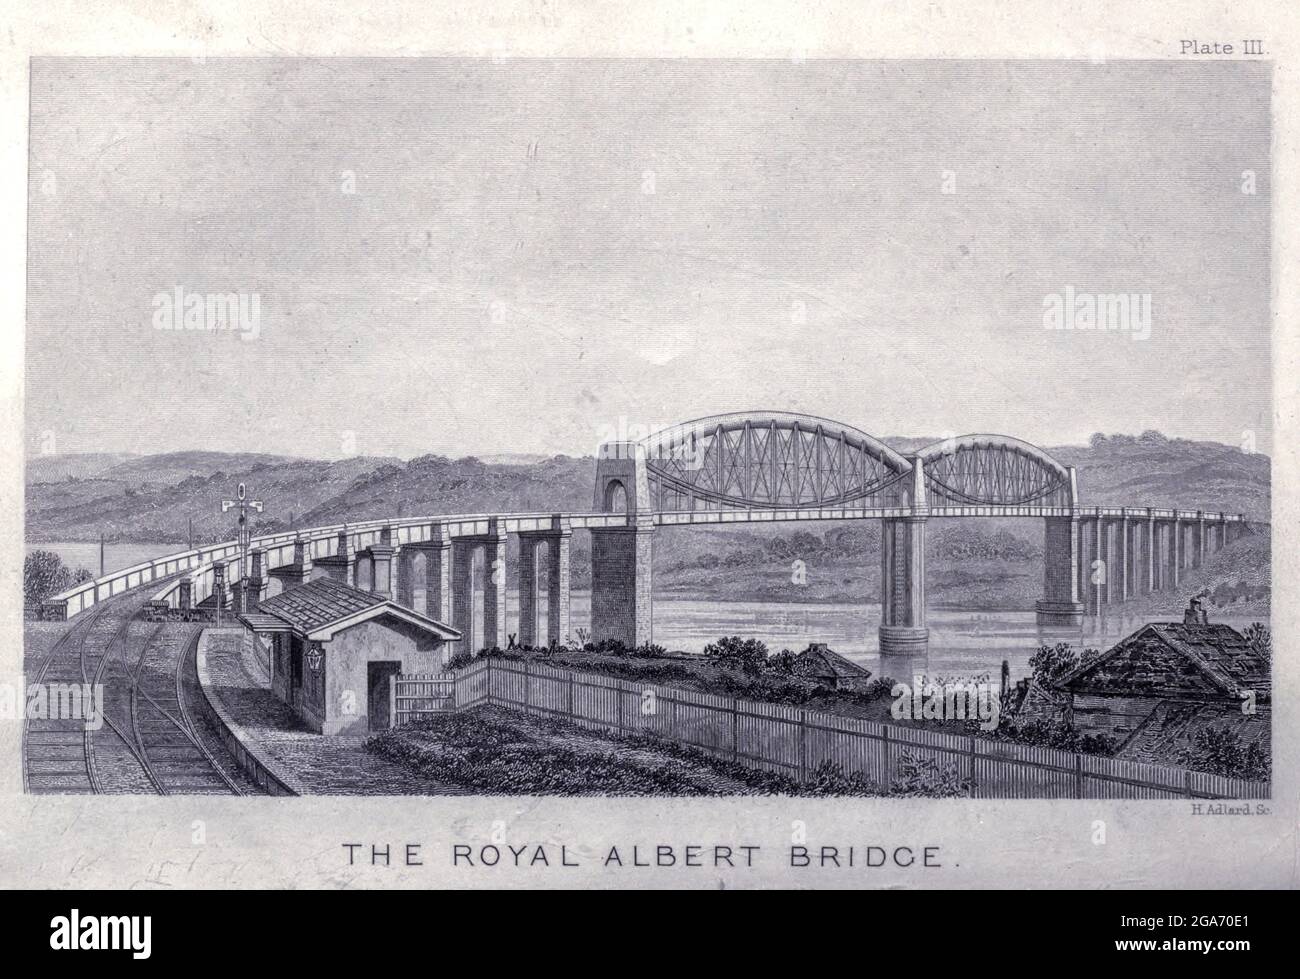 Die Royal Albert Bridge ist eine Eisenbahnbrücke, die den Fluss Tamar in England zwischen Plymouth, Devon und Saltash, Cornwall, überspannt. Aus dem Buch das Leben des Isambard Kingdom Brunel, Bauingenieur. Von Isambard Brunel Veröffentlicht in London von Longmans, Green in 1870. Isambard Kingdom Brunel FRS MInstCE (9. April 1806 – 15. September 1859) war ein englischer Bauingenieur, der als "eine der genialsten und produktivsten Persönlichkeiten der Ingenieurgeschichte", "einer der Ingenieurgiganten des 19. Jahrhunderts" und "eine der größten Persönlichkeiten der industriellen Revolution, [Wer] veränderte das Gesicht der Engländer Stockfoto